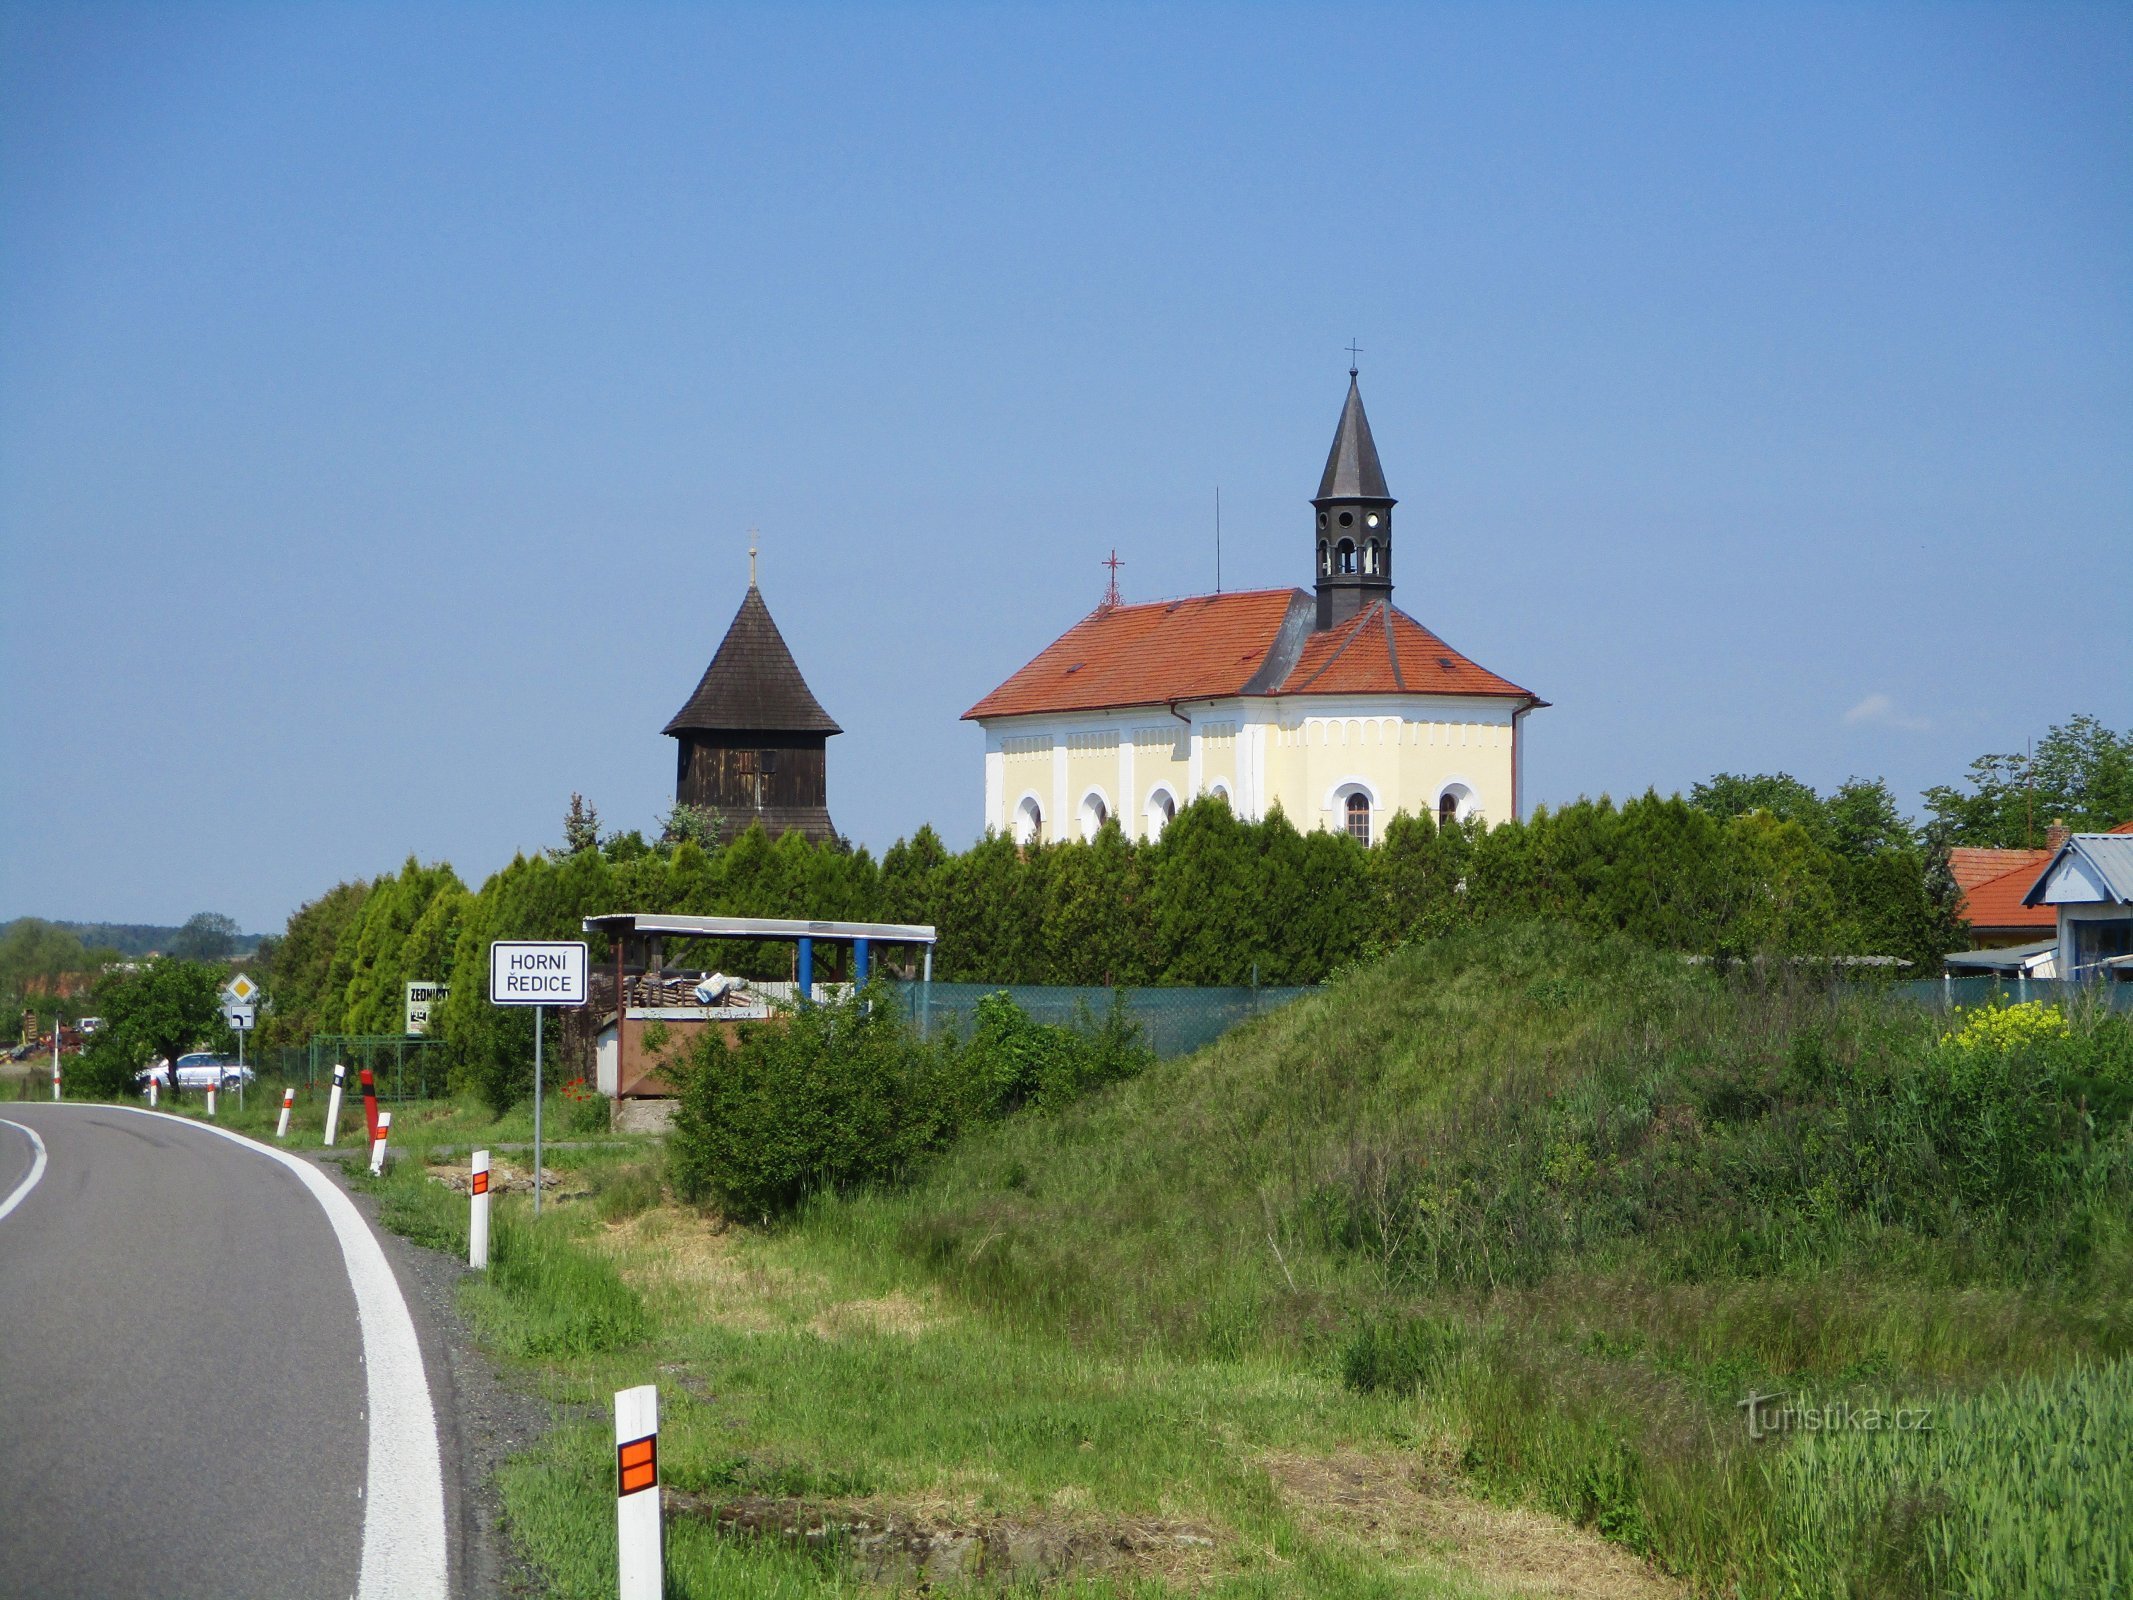 Nhà thờ St. Wenceslas với tháp chuông (Horní Ředice, 16.5.2020/XNUMX/XNUMX)